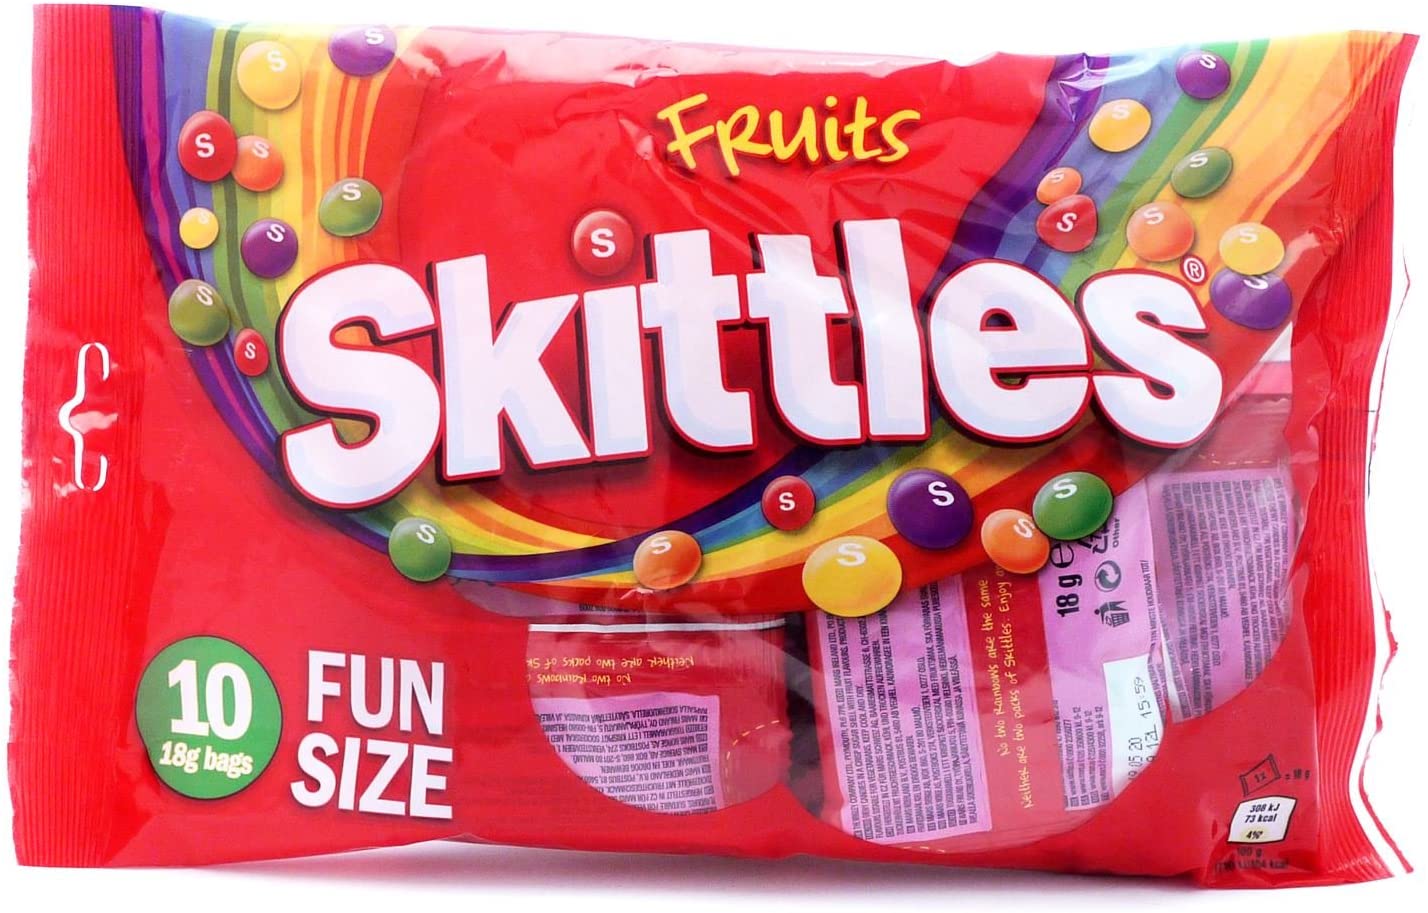 Skittles Fruits Fun Size